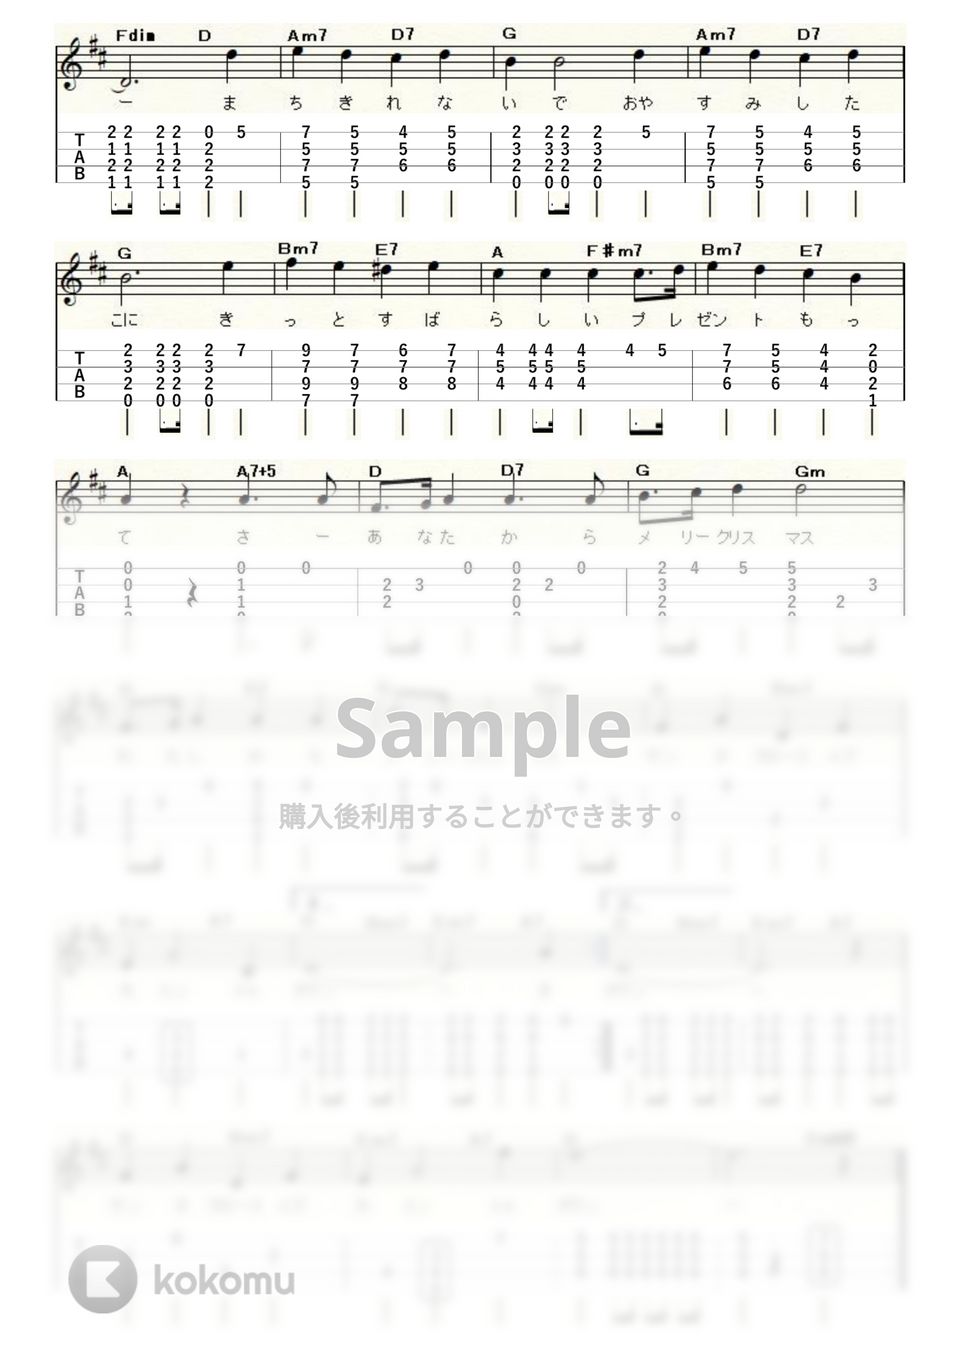 クリスマスソング - サンタが街にやってくる (ｳｸﾚﾚｿﾛ / High-G,Low-G / 中級) by ukulelepapa